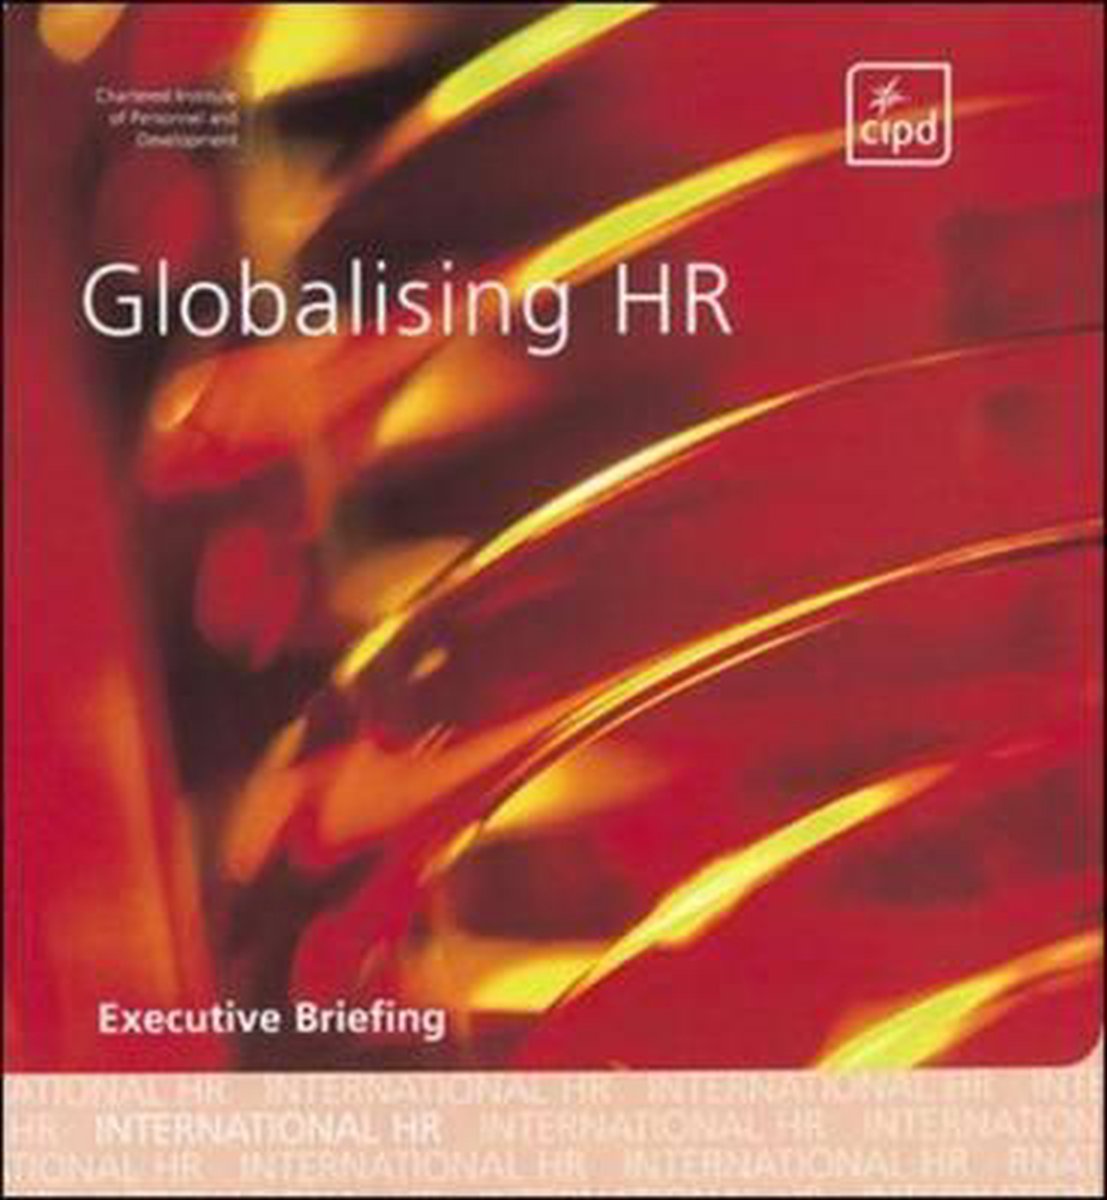 Globalising HR - Cipd